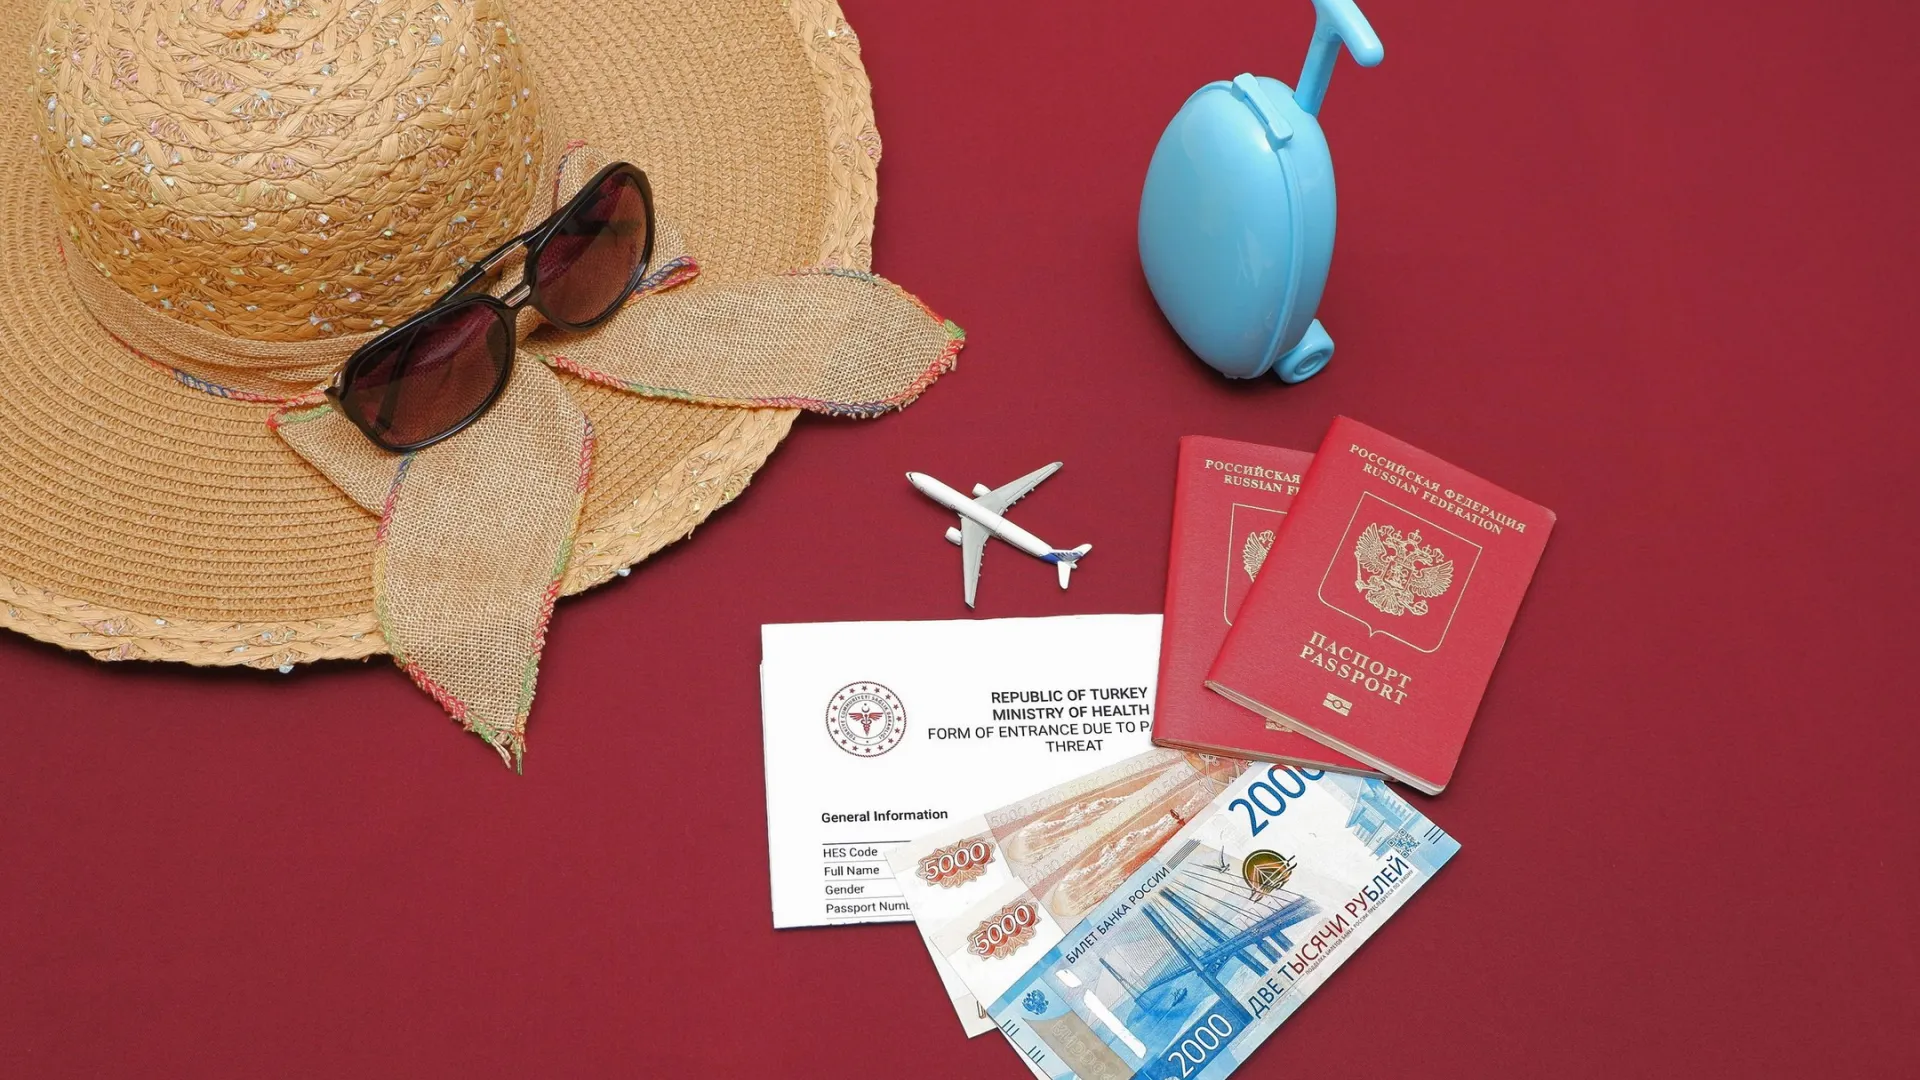 Но для получения электронной визы нужно будет заплатить сервисный сбор. Фото: TsibaevAlex/Shutterstock/Fotodom